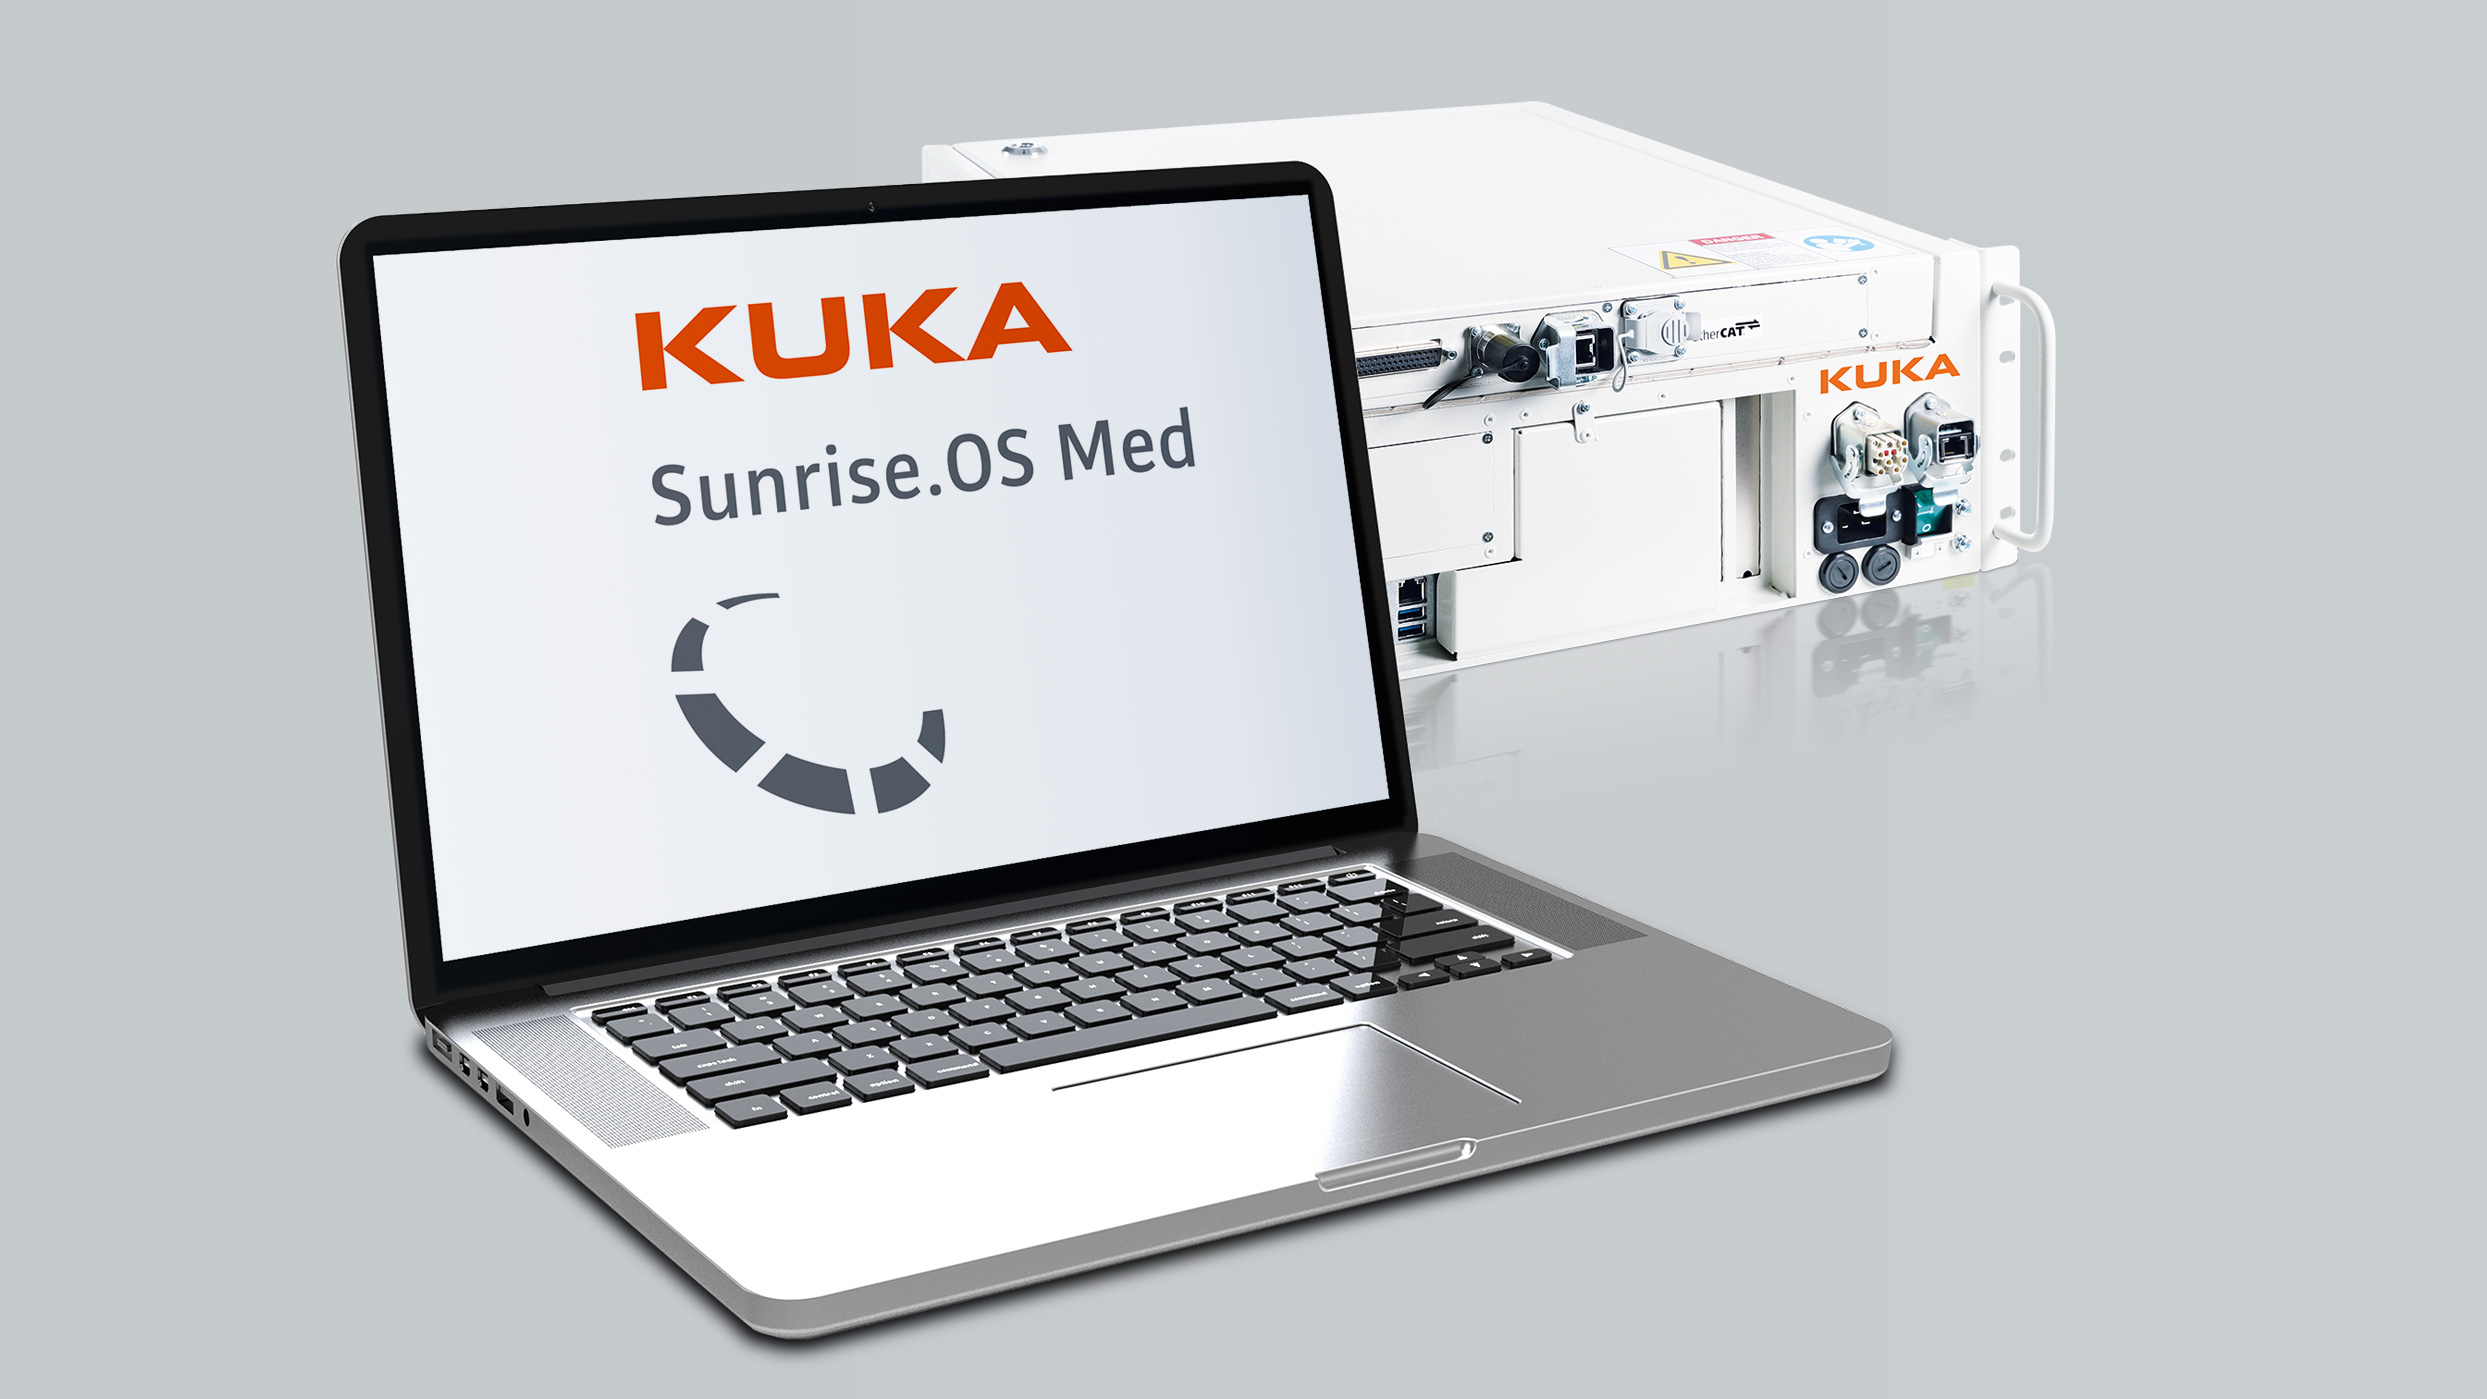 KUKA Sunrise OS Med Operating System Medical technology